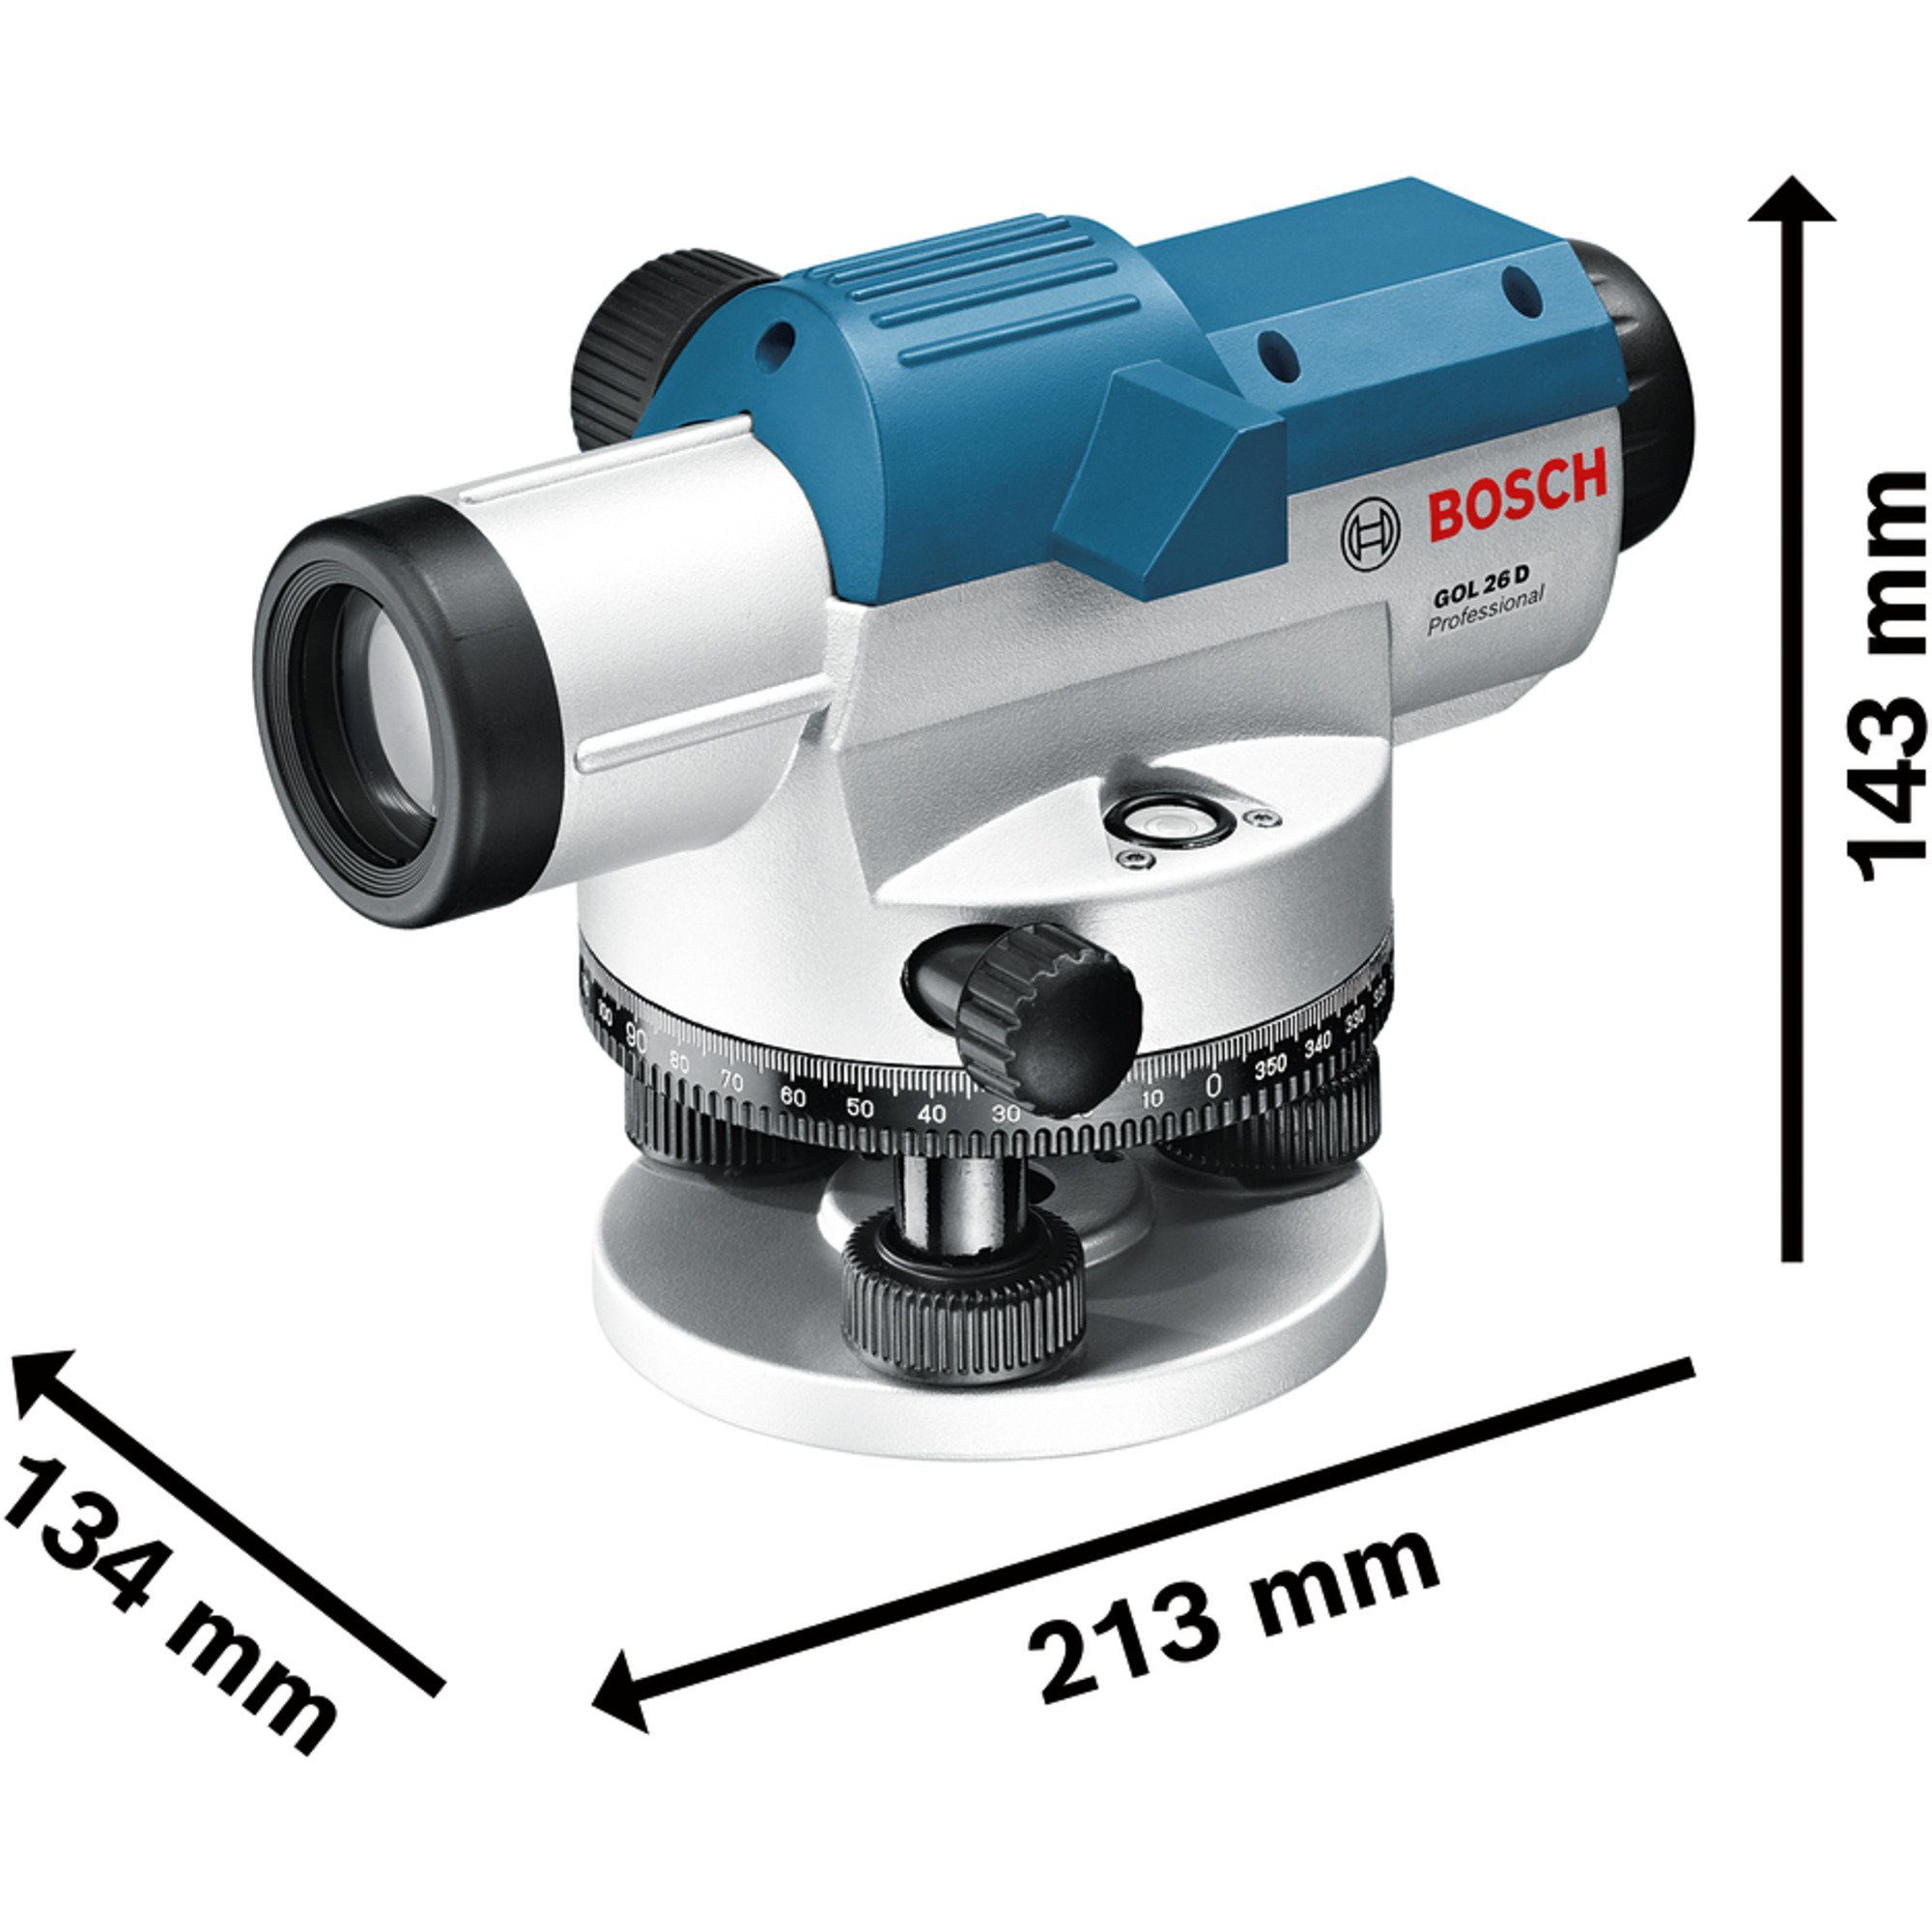 BOSCH Akku-Multifunktionswerkzeug Nivelliergerät GOL Optisches 26 Professional Bosch